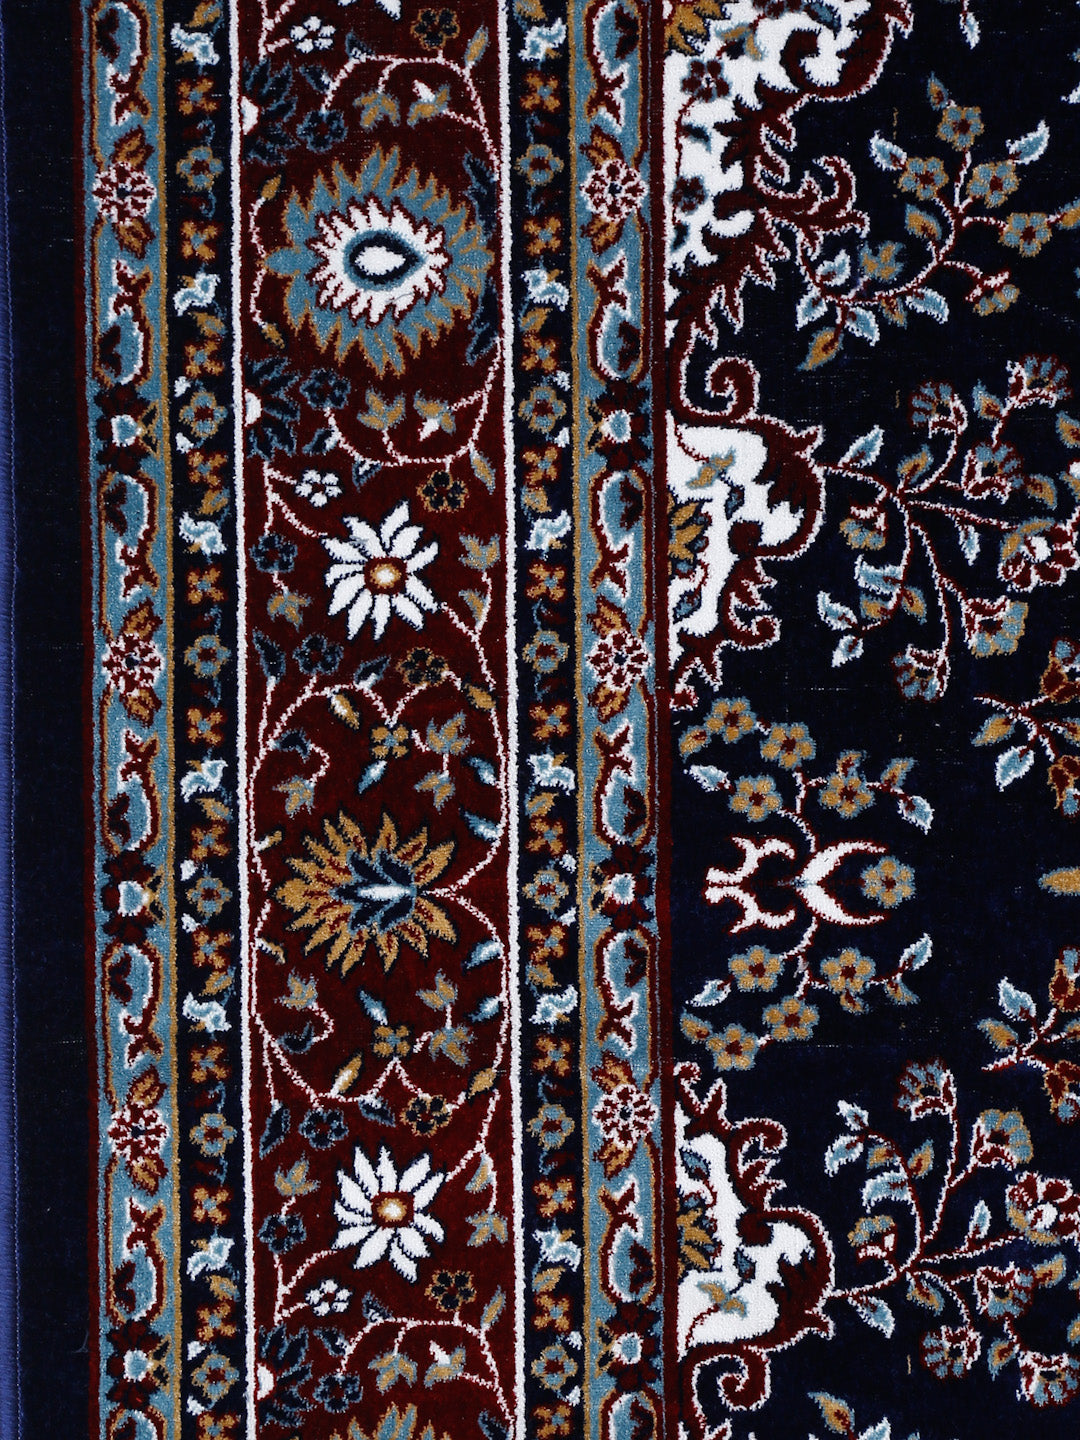 Klotthe Blue "250X200 cm" Floral Carpet